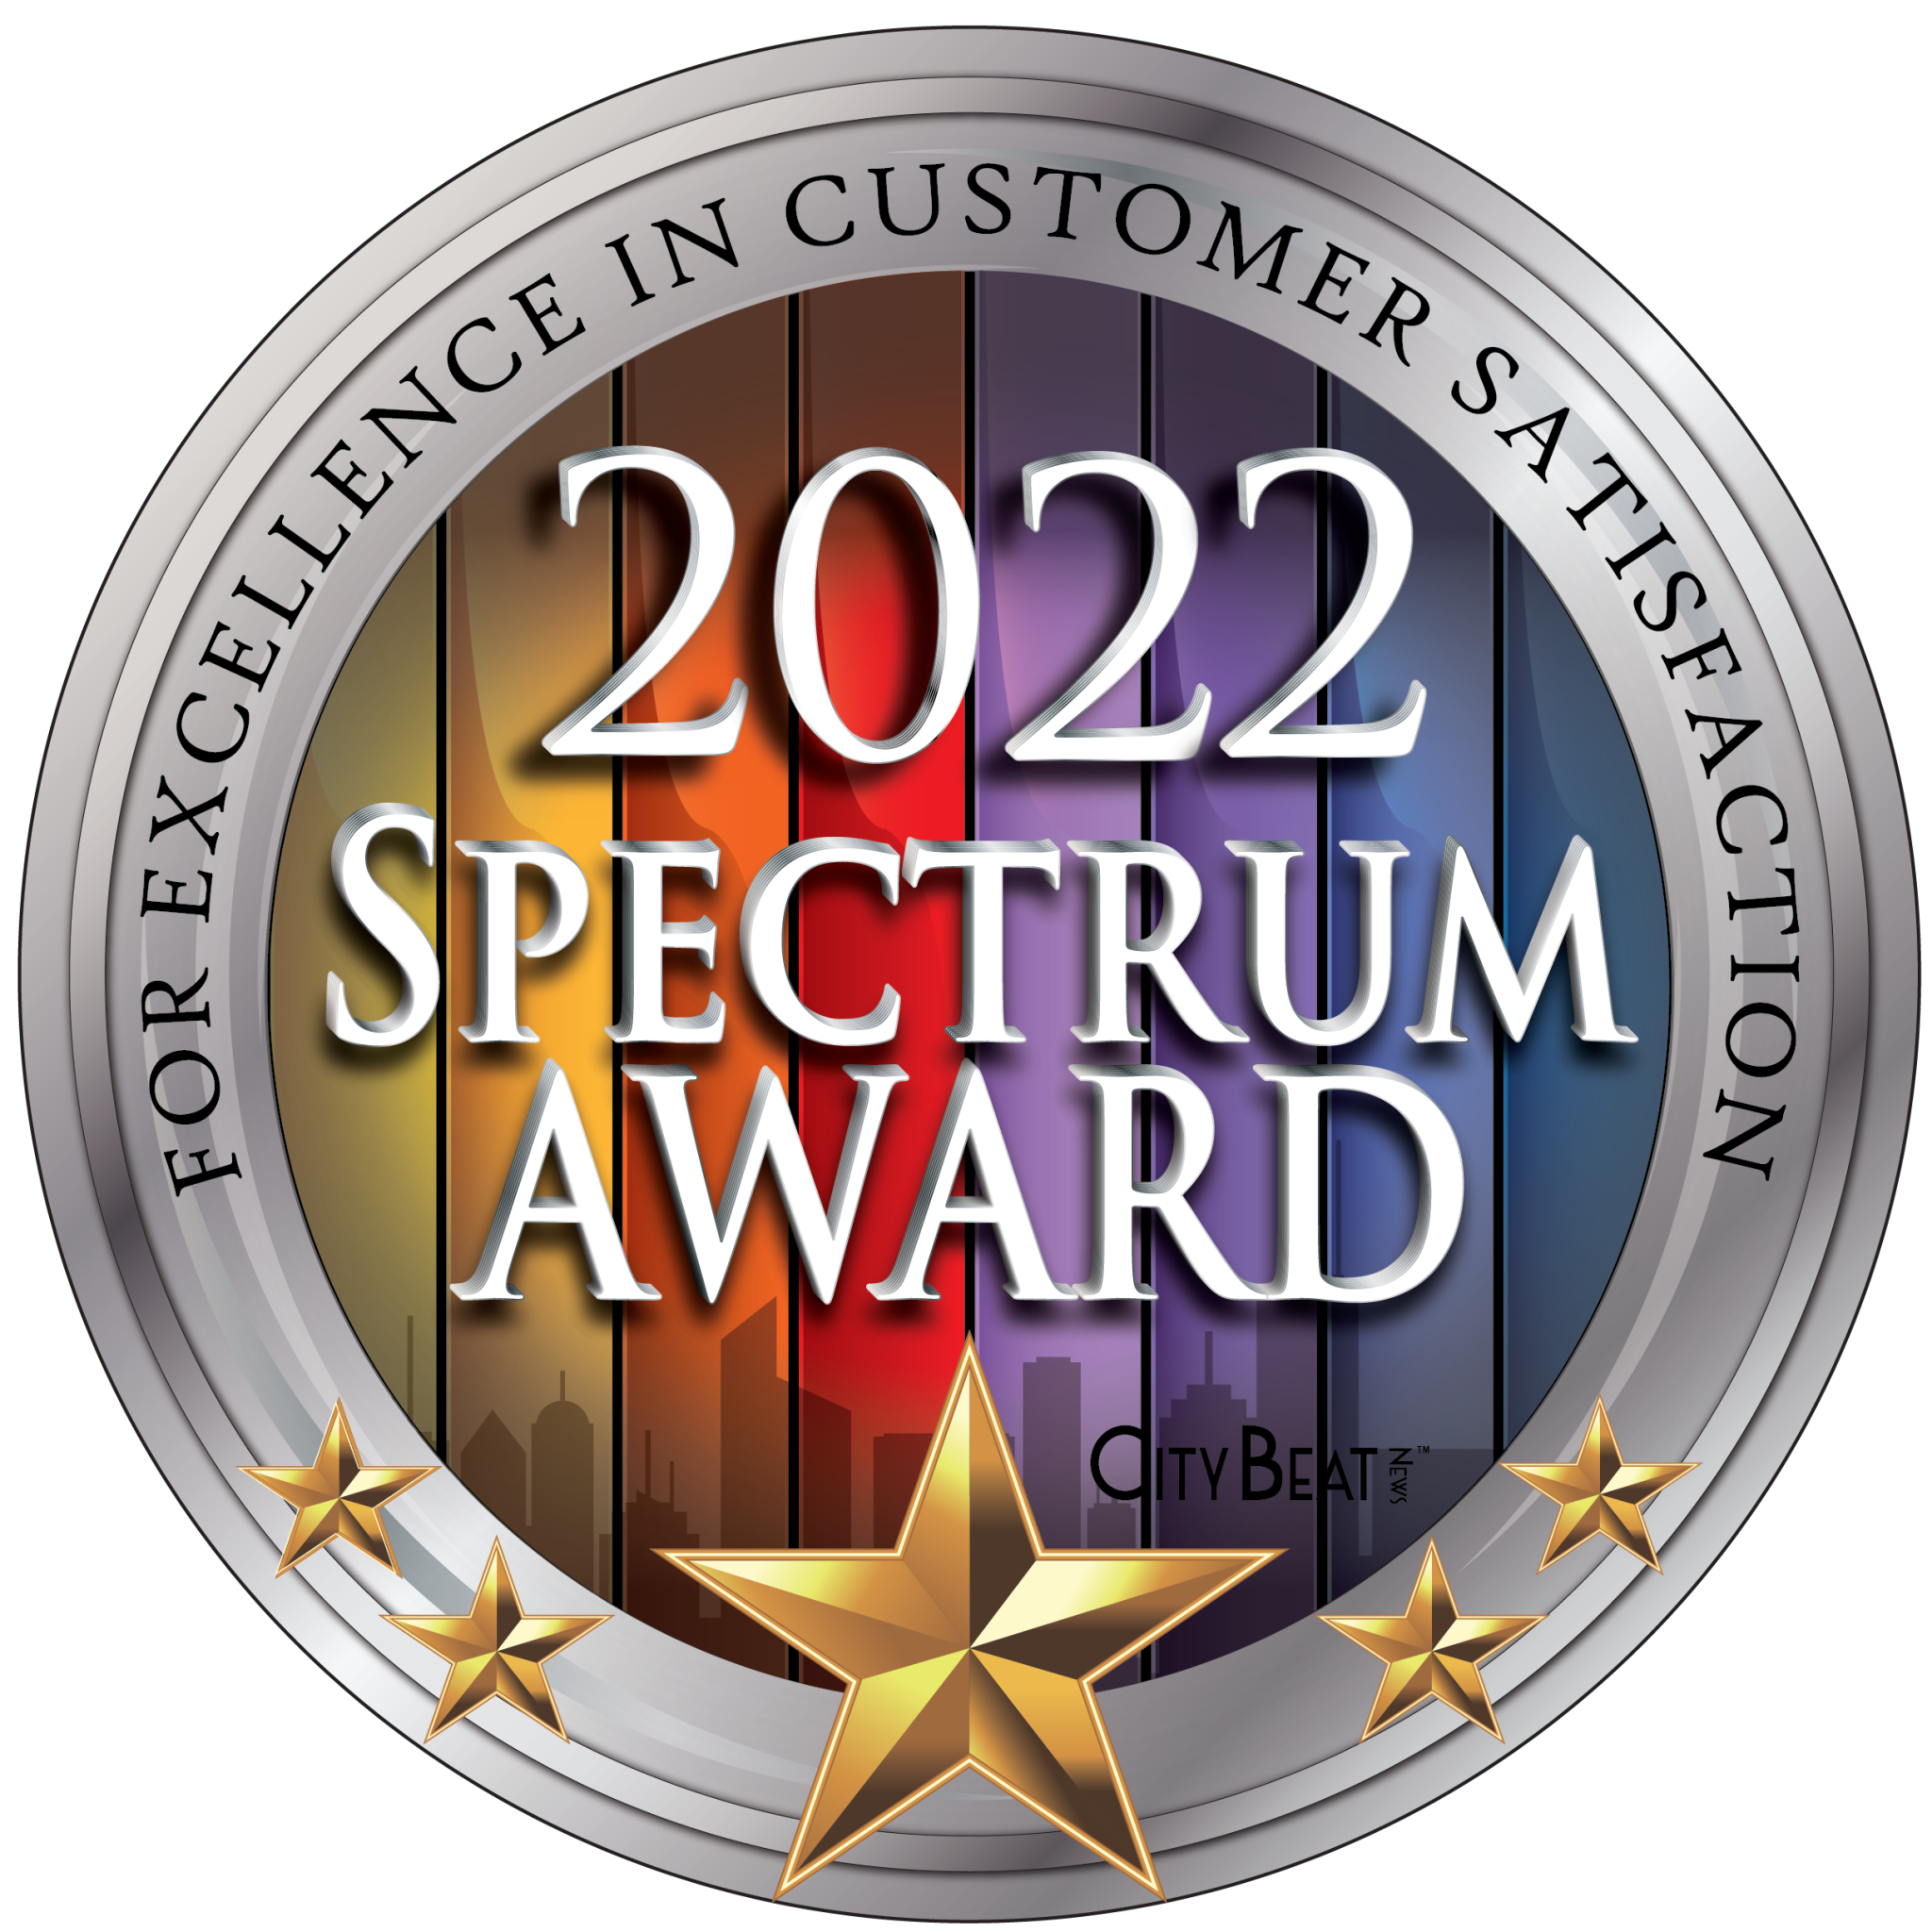 Spectrum award 2022